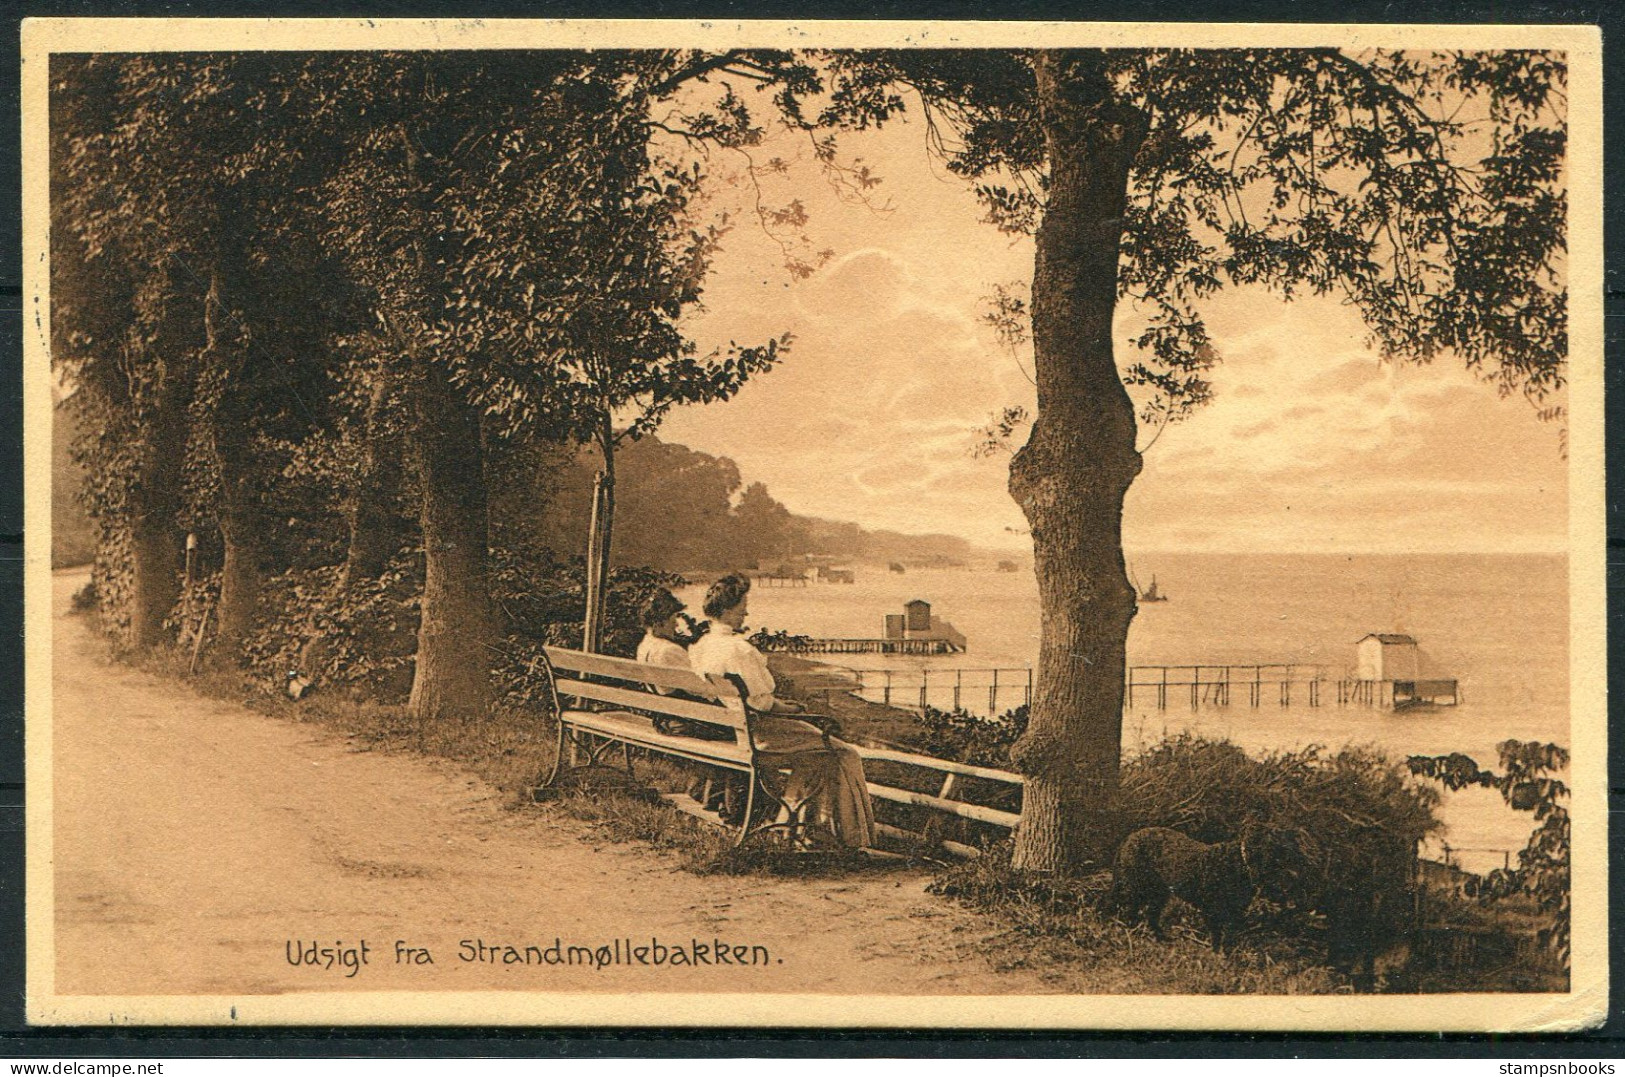 1911 Denmark Postcard - Sweden Malmo Boxed "Fran Danmark" Paquebot - Cartas & Documentos